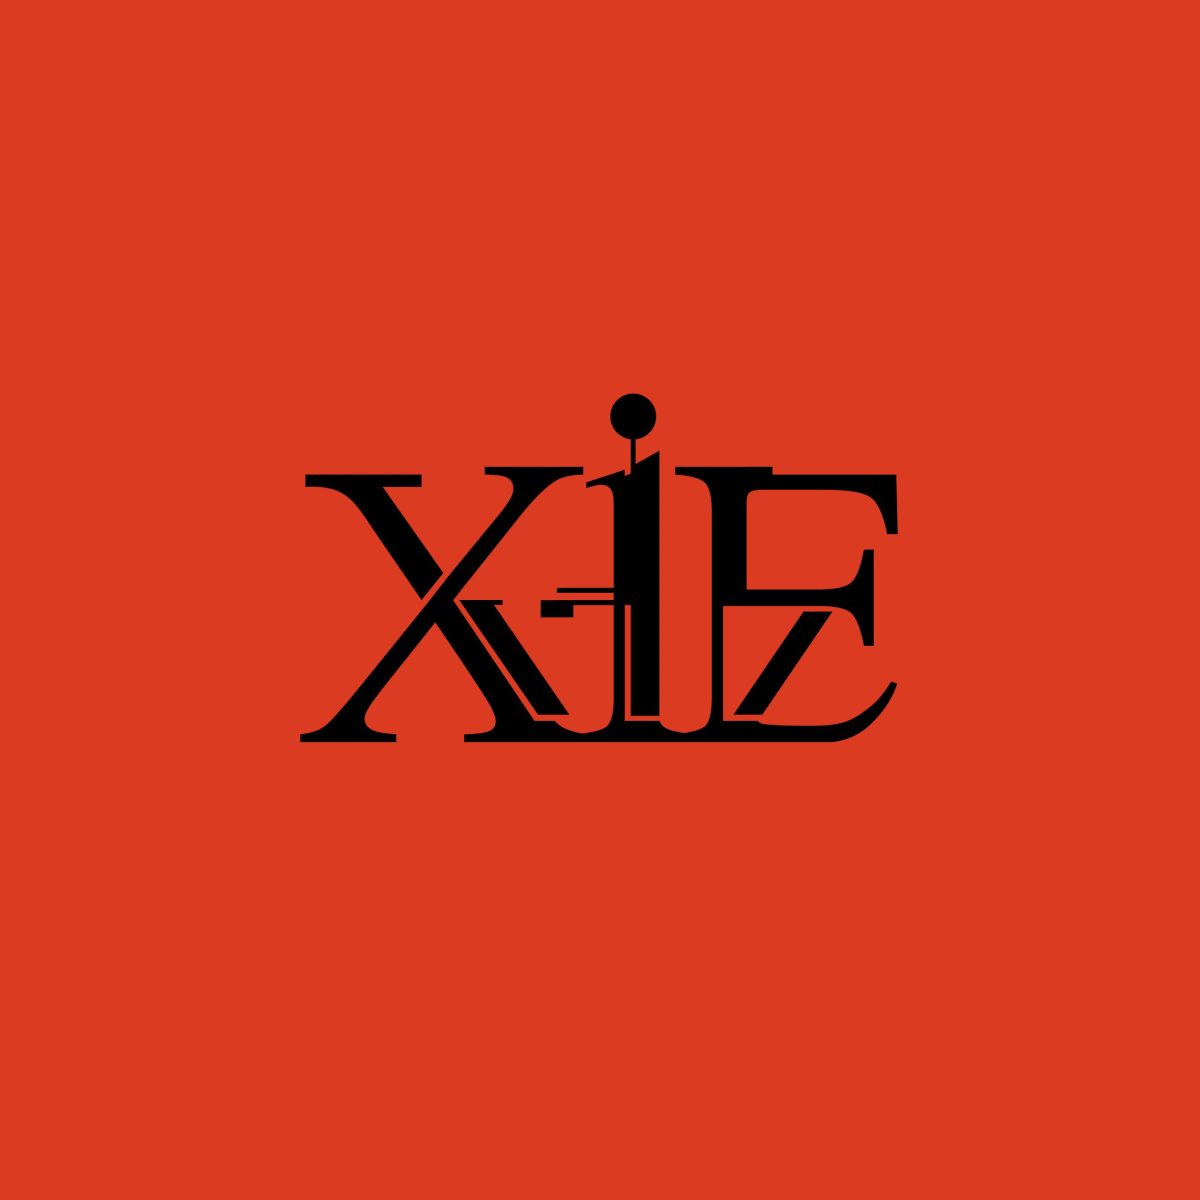 Logo__XIE__brand